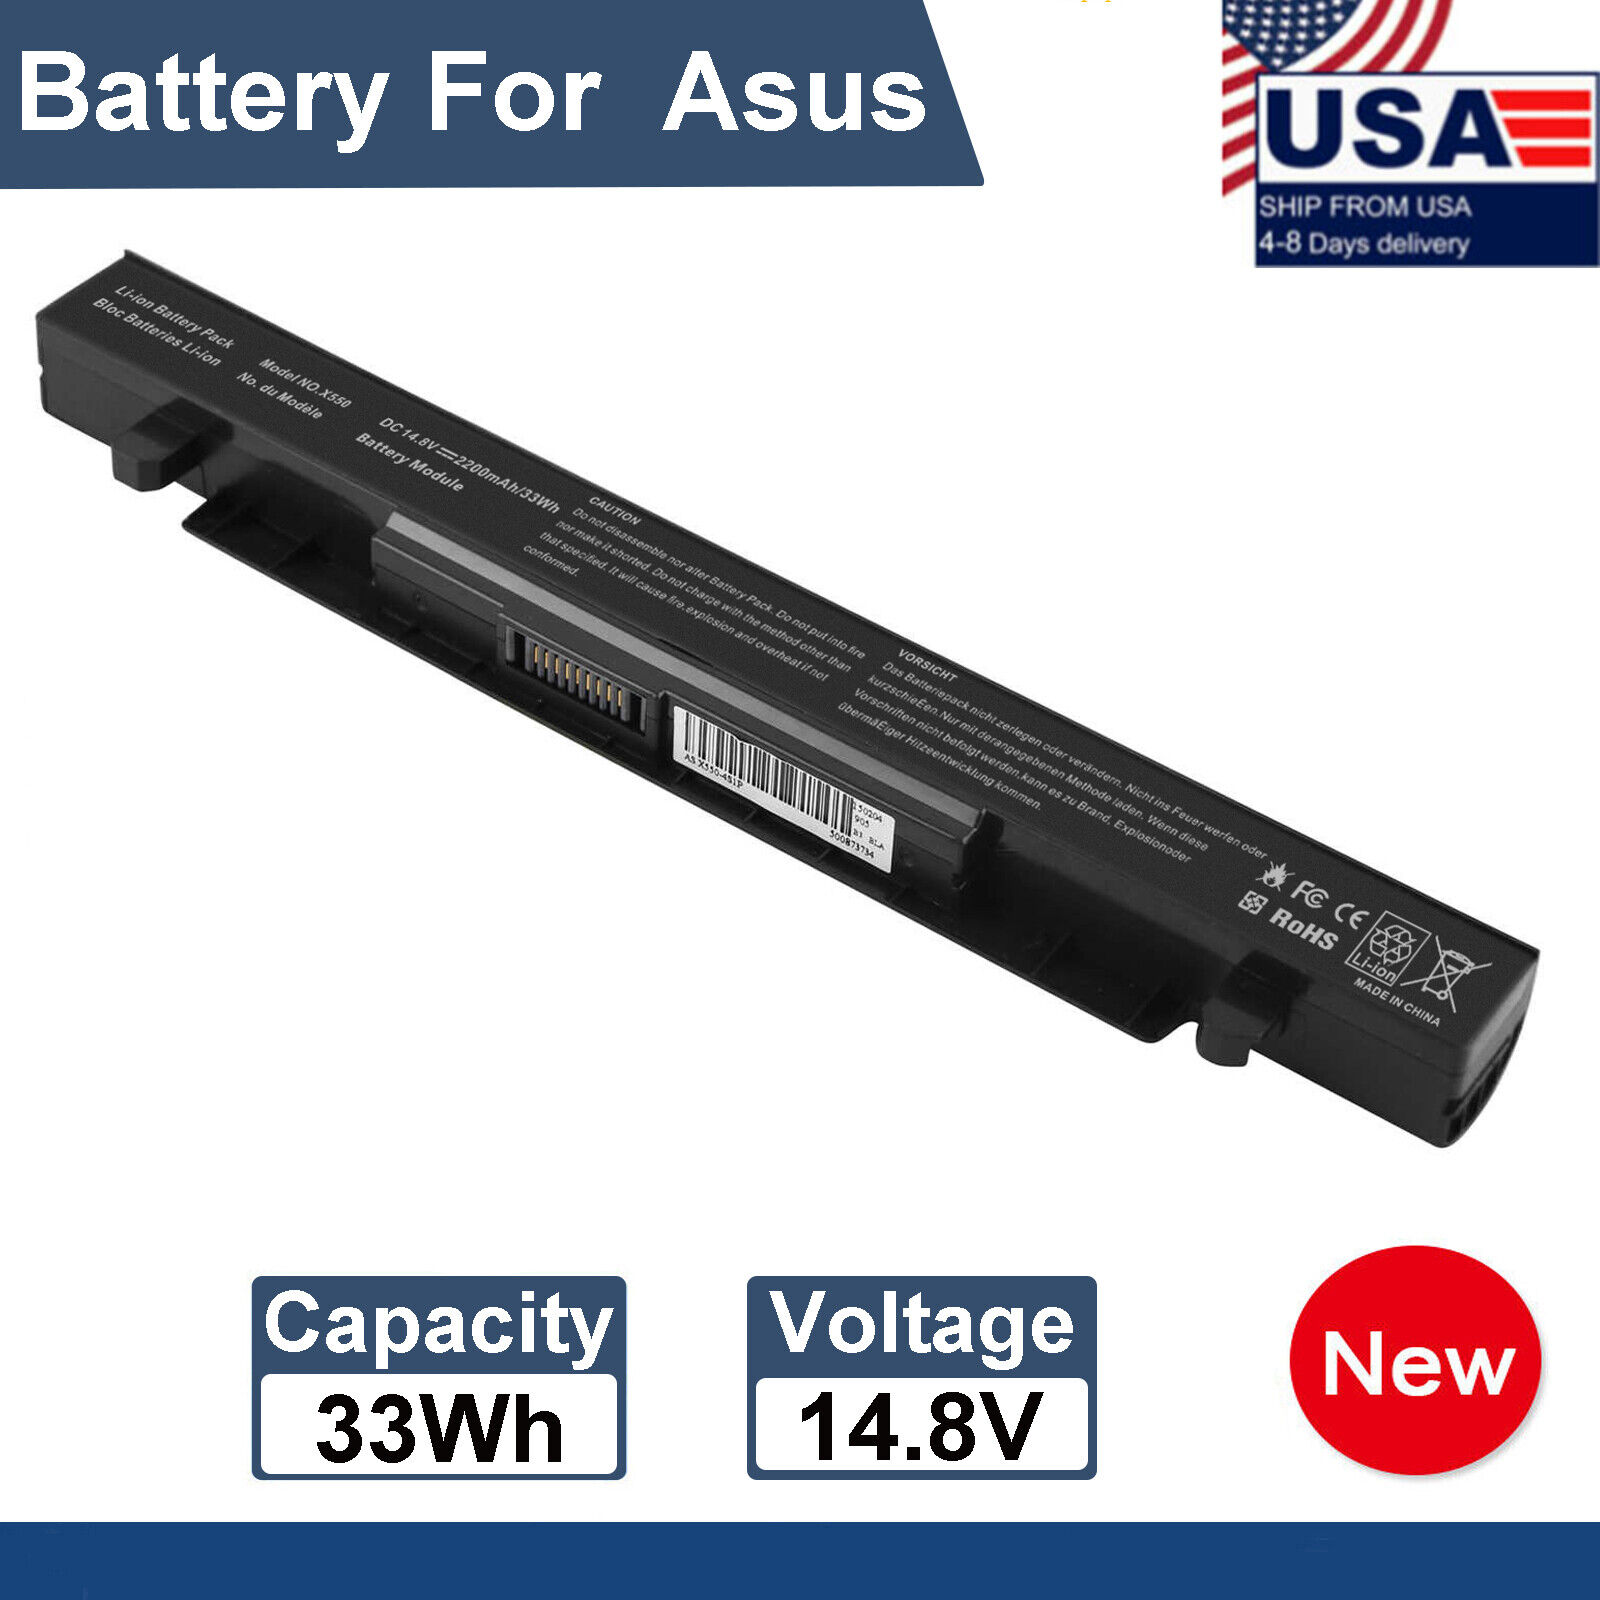 X550 Battery for Asus X550A X550C F550 F550C K550 K550C A550 A550C P450 A41-X550